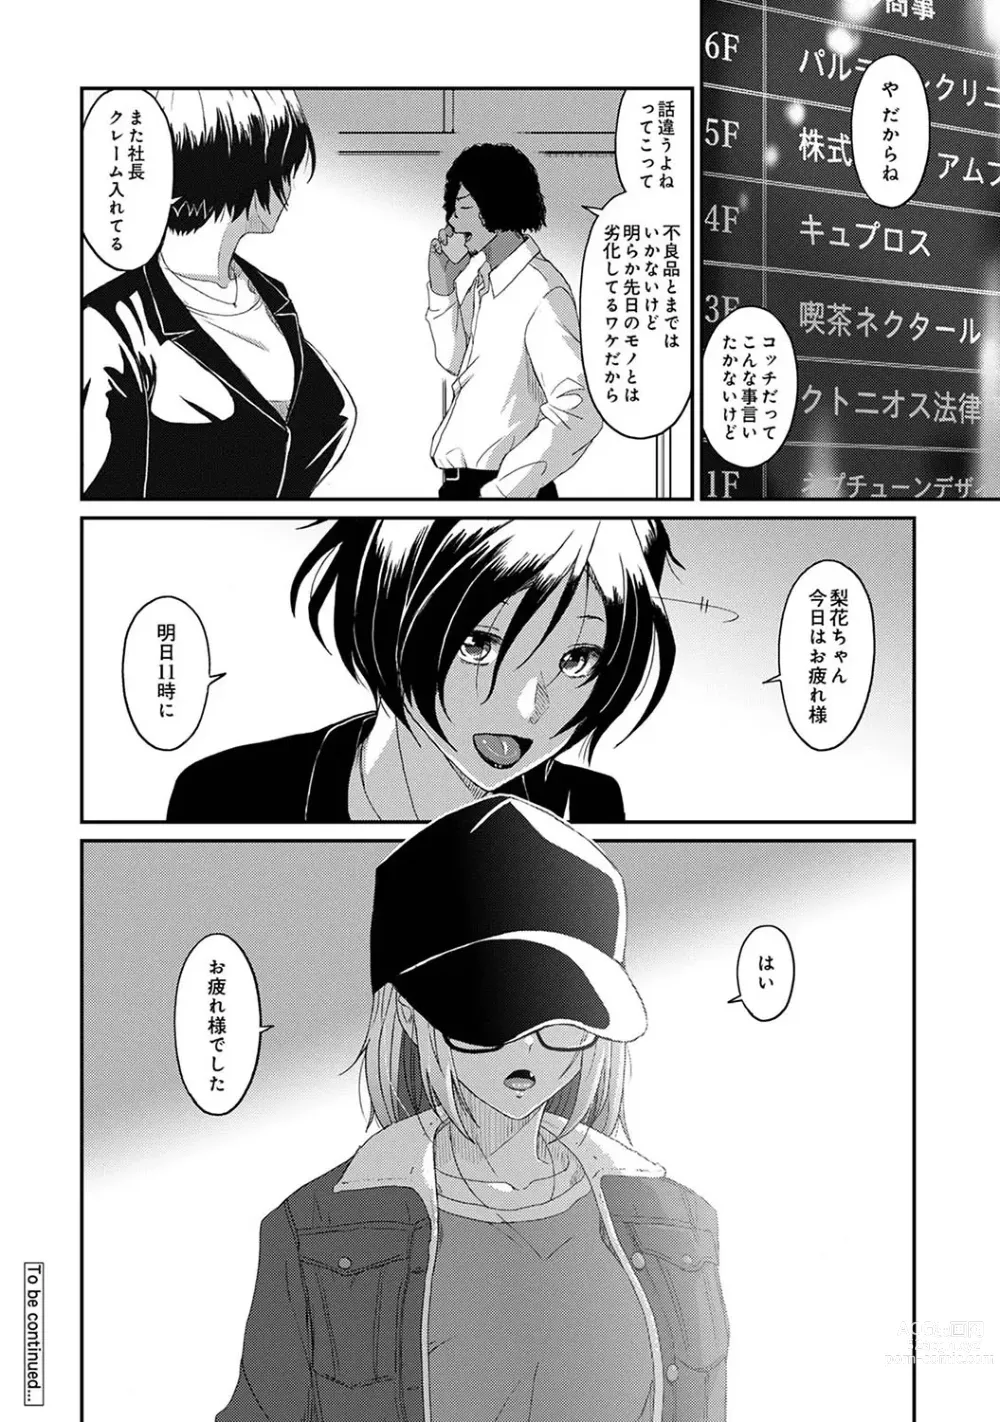 Page 25 of manga Itaiamai Ch. 25